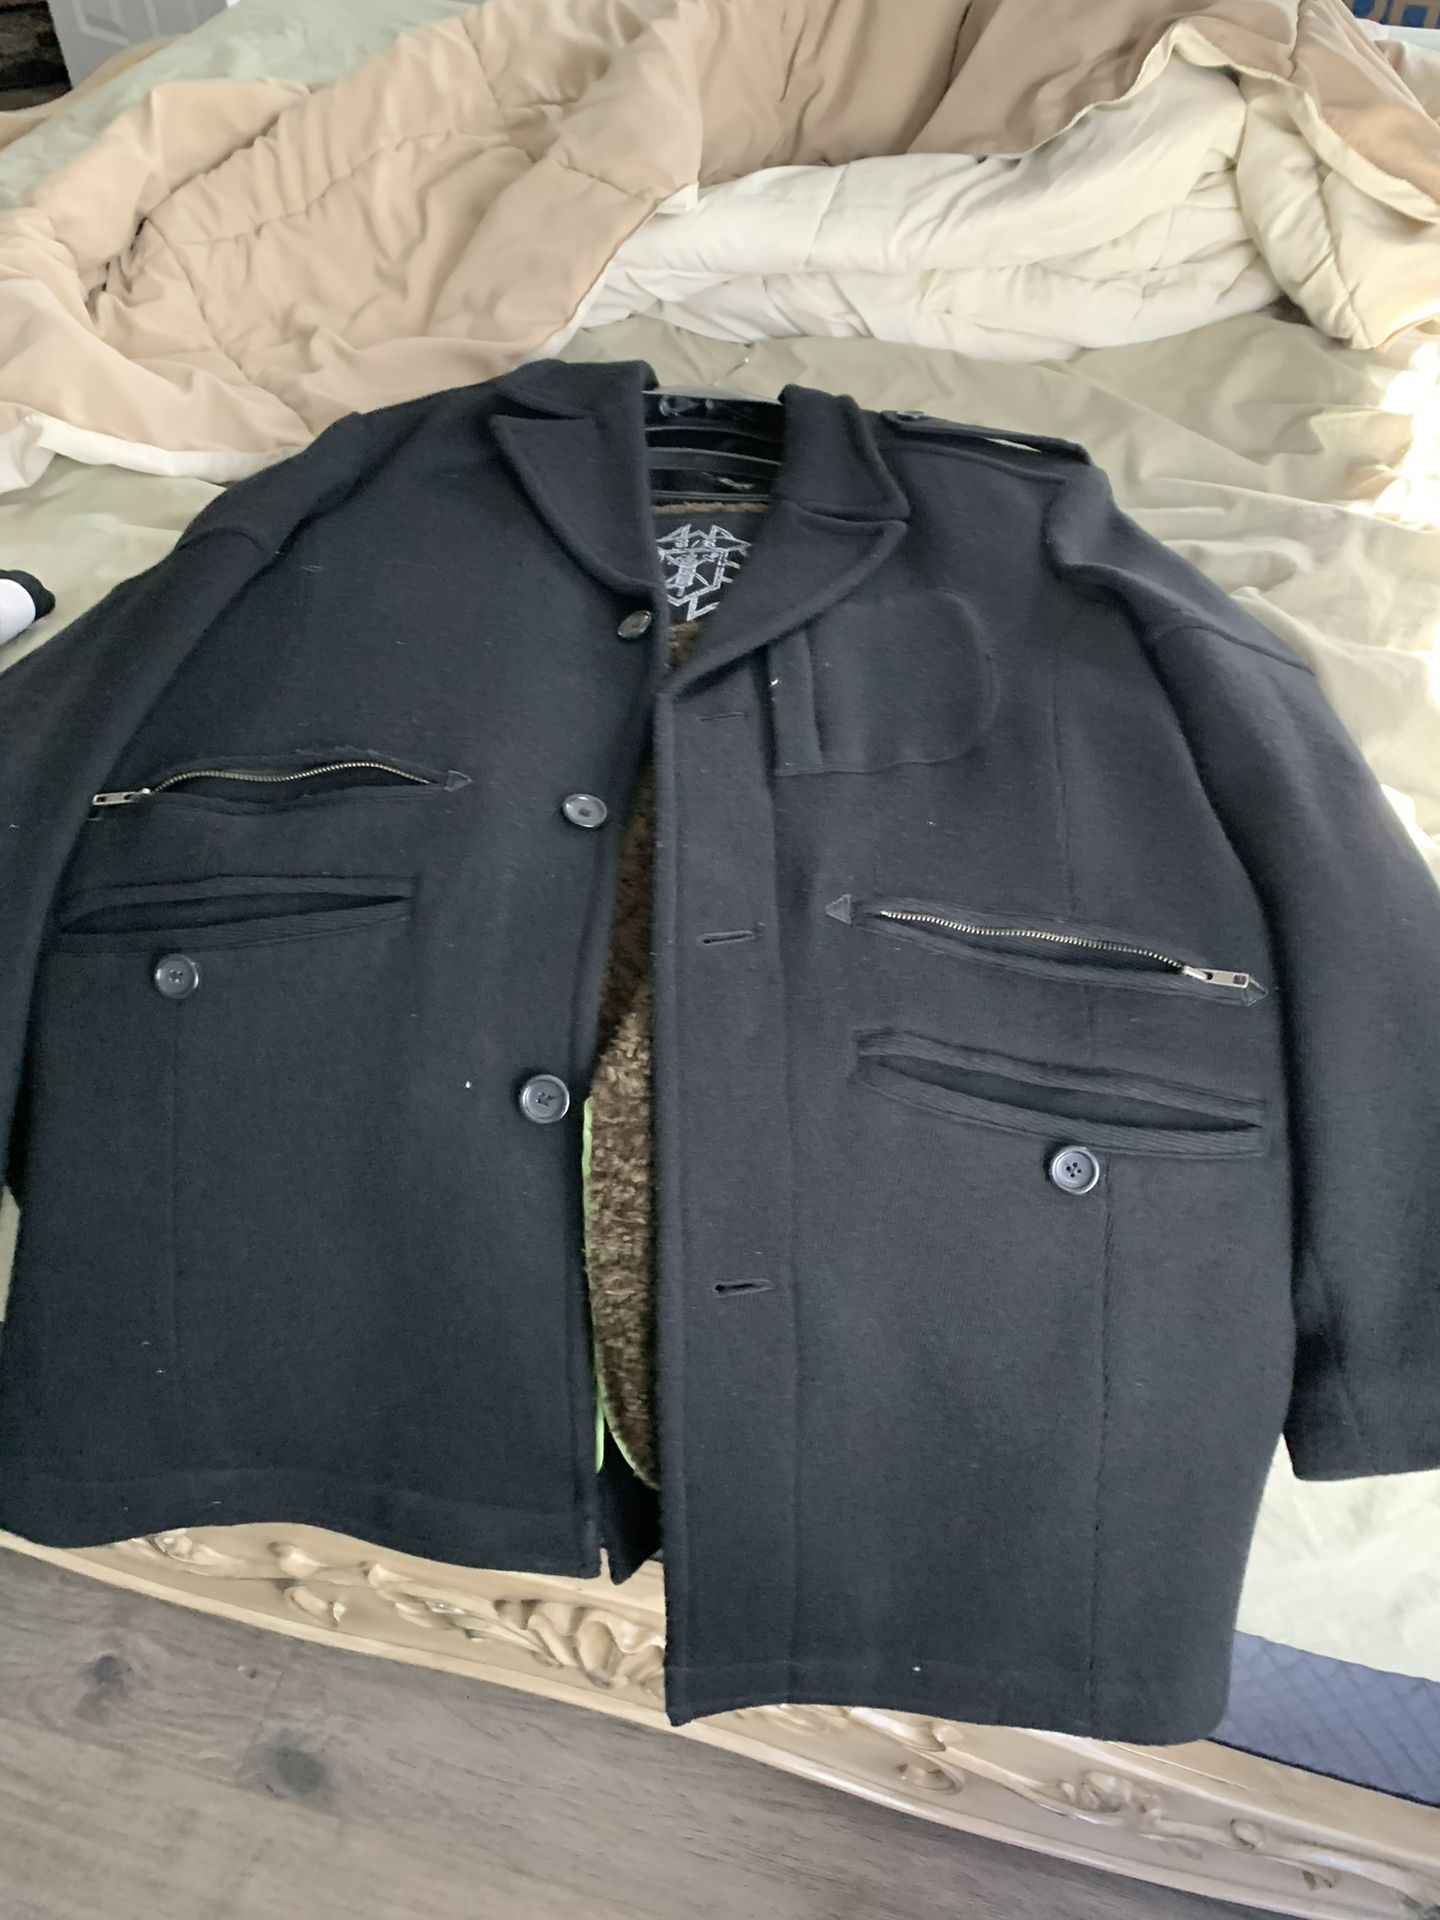 Coat Jacket Xxl 